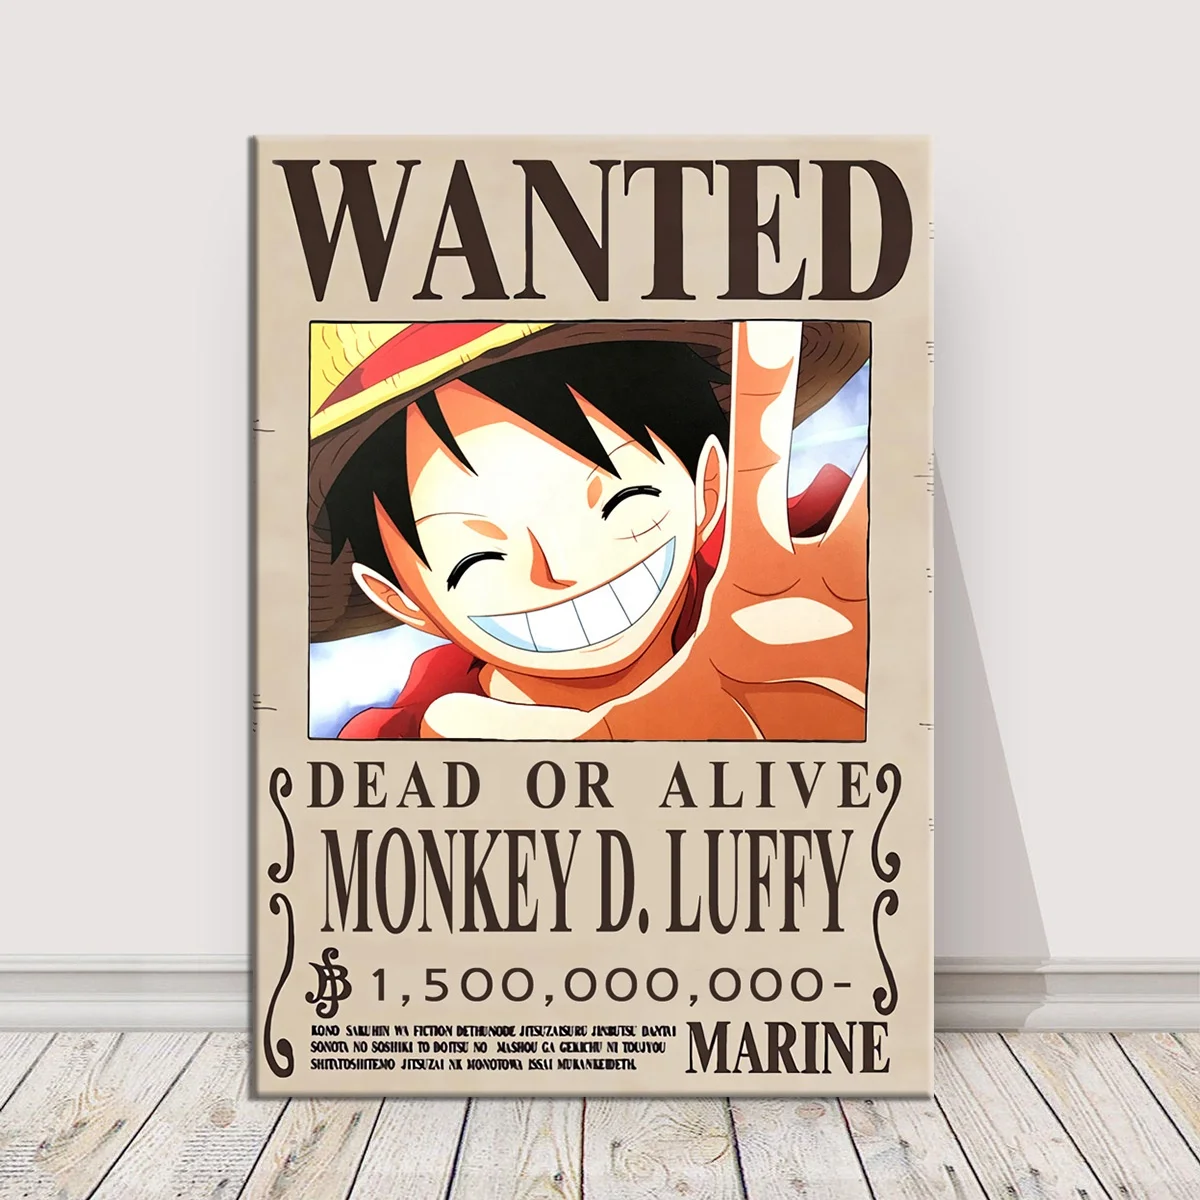 Bạn muốn biết về Sơn Dầu - nhân vật đầy bí ẩn trong series One Piece? Hãy xem bức Wanted Poster này! Nó cho thấy một hình ảnh tuyệt vời về nhân vật đầy thú vị và sẽ khiến bạn muốn tìm hiểu về anh ta nhiều hơn.